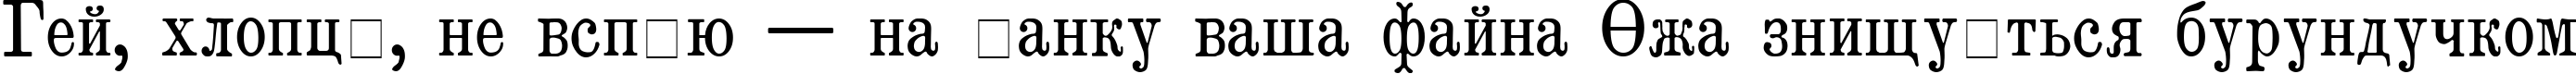 Пример написания шрифтом Brokgauz & Efron текста на украинском